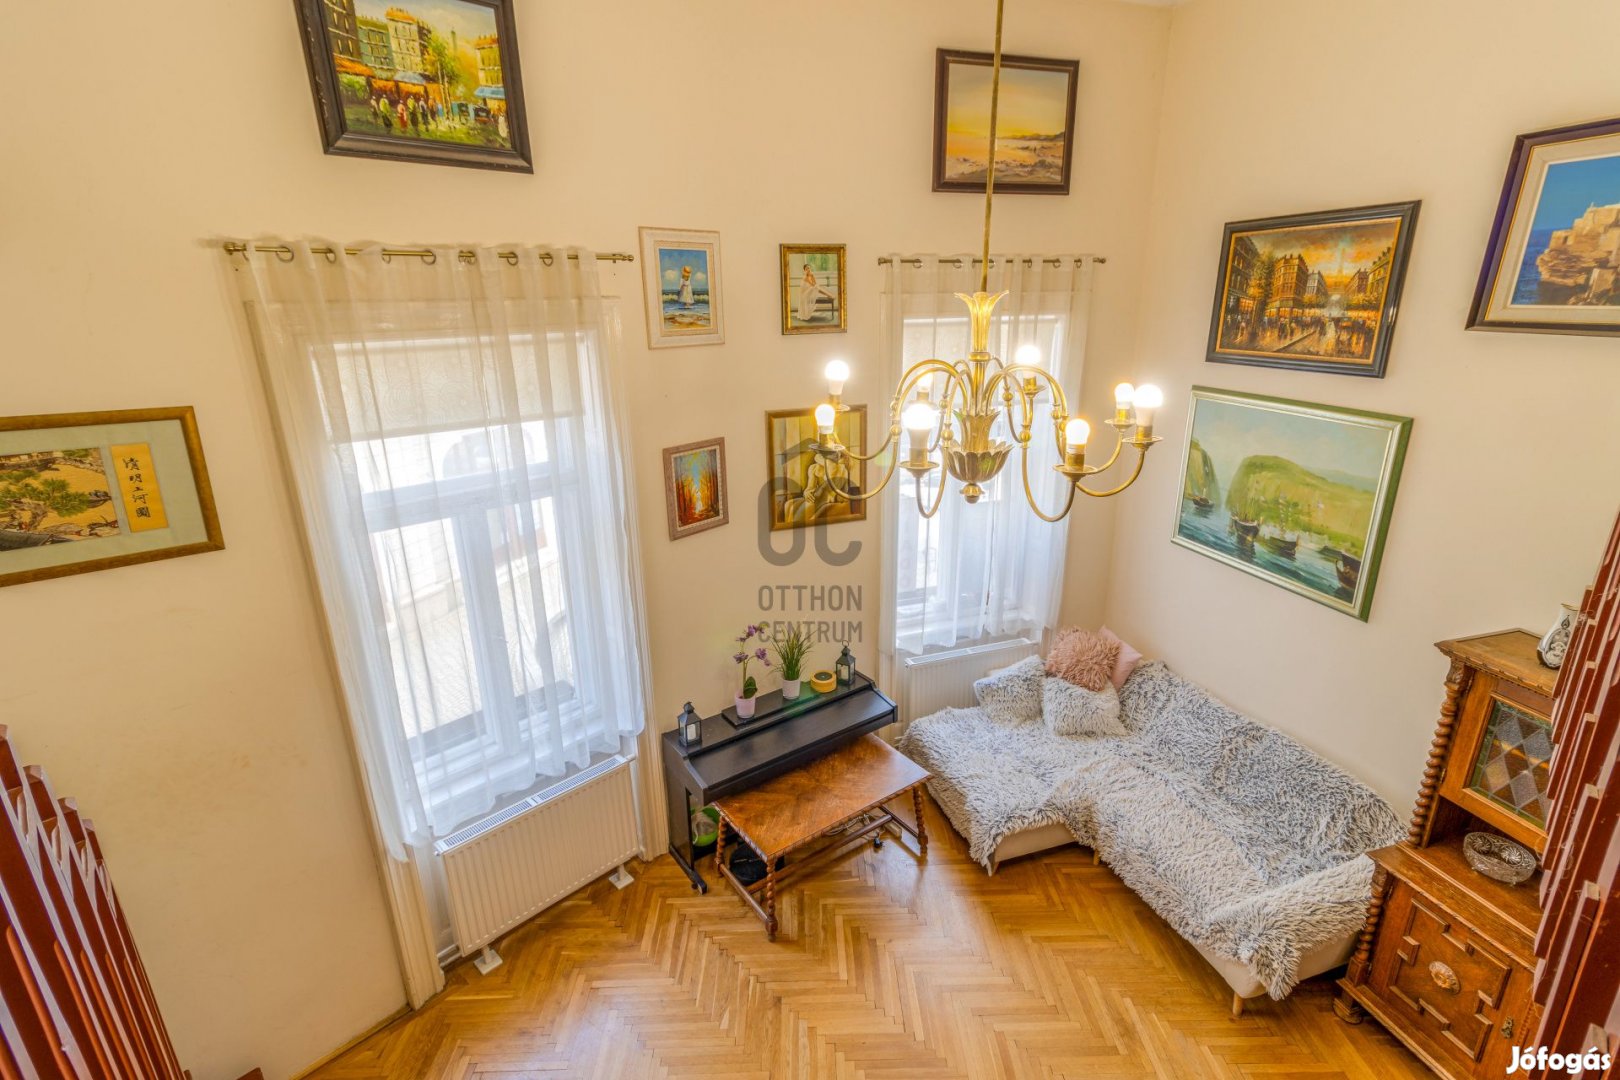 Székesfehérvár történelmi belvárosában 2 szintes, galériázott polgári